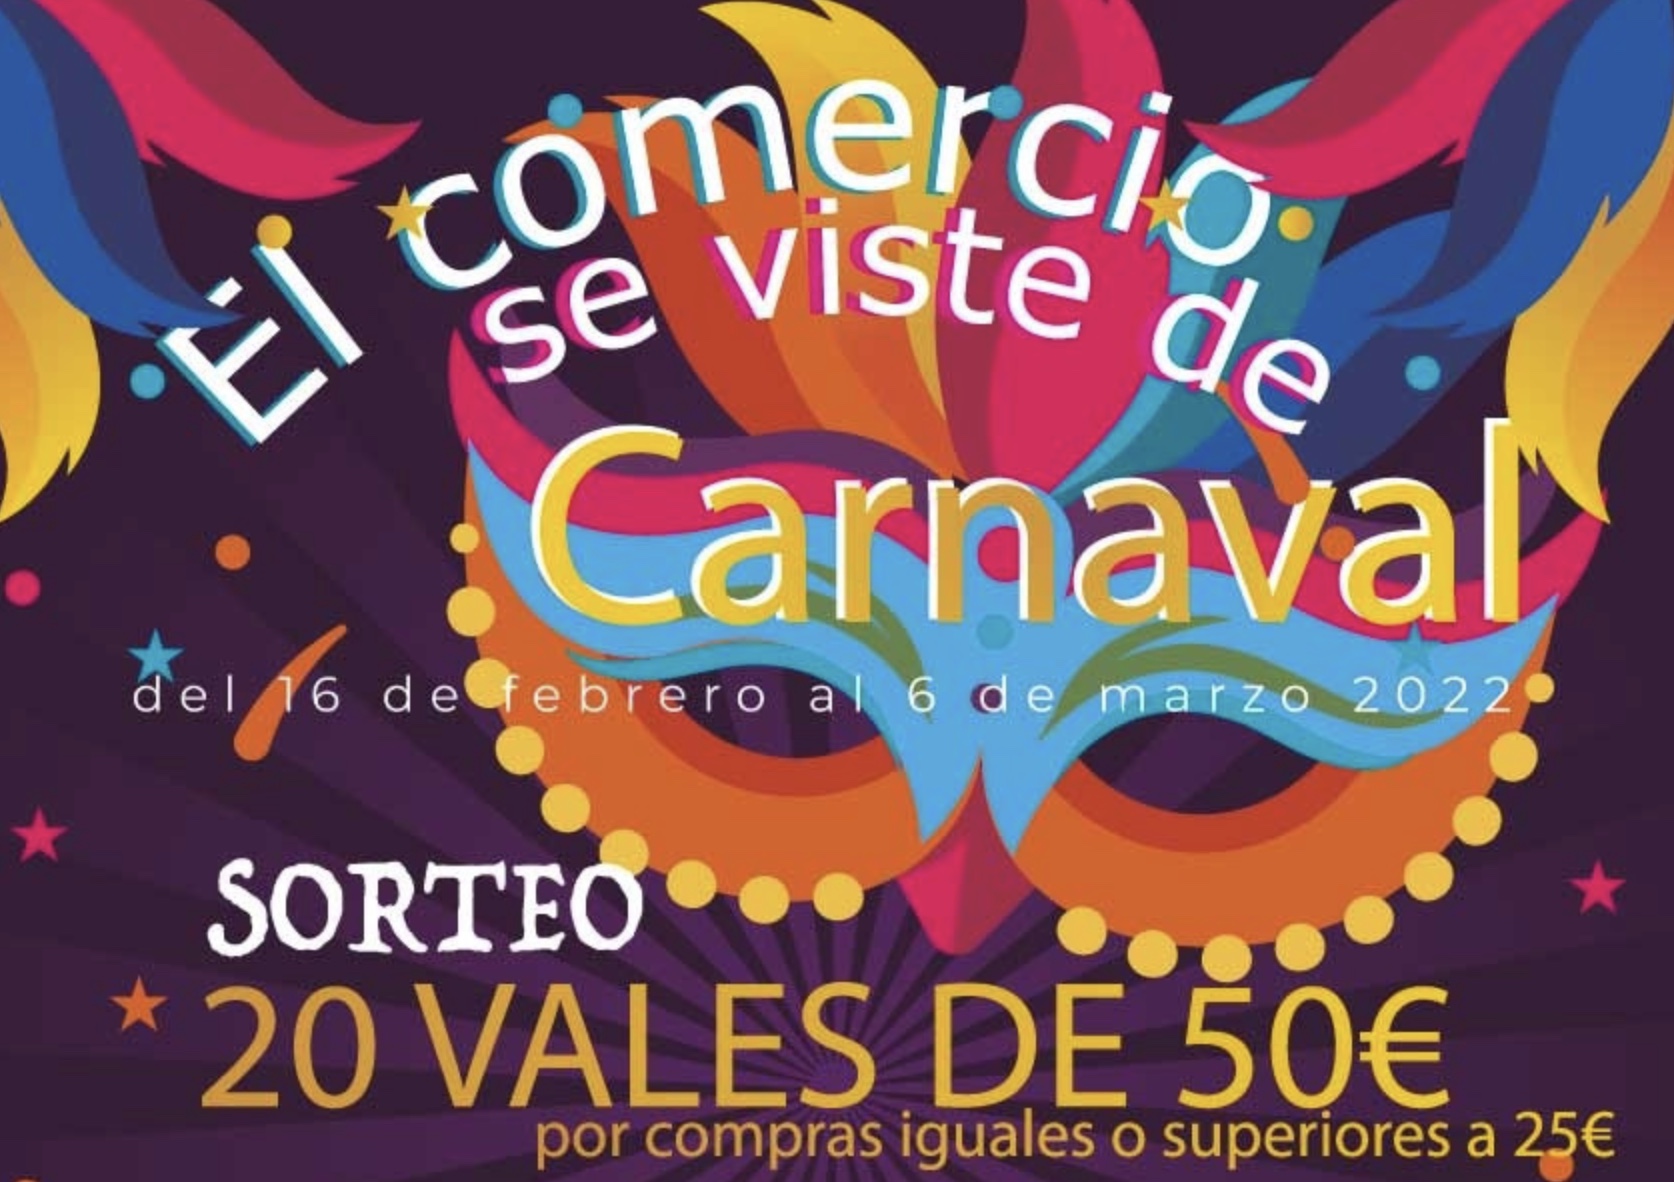 El comercio se viste de carnaval en Torrevieja - AQUÍ Medios de Comunicación